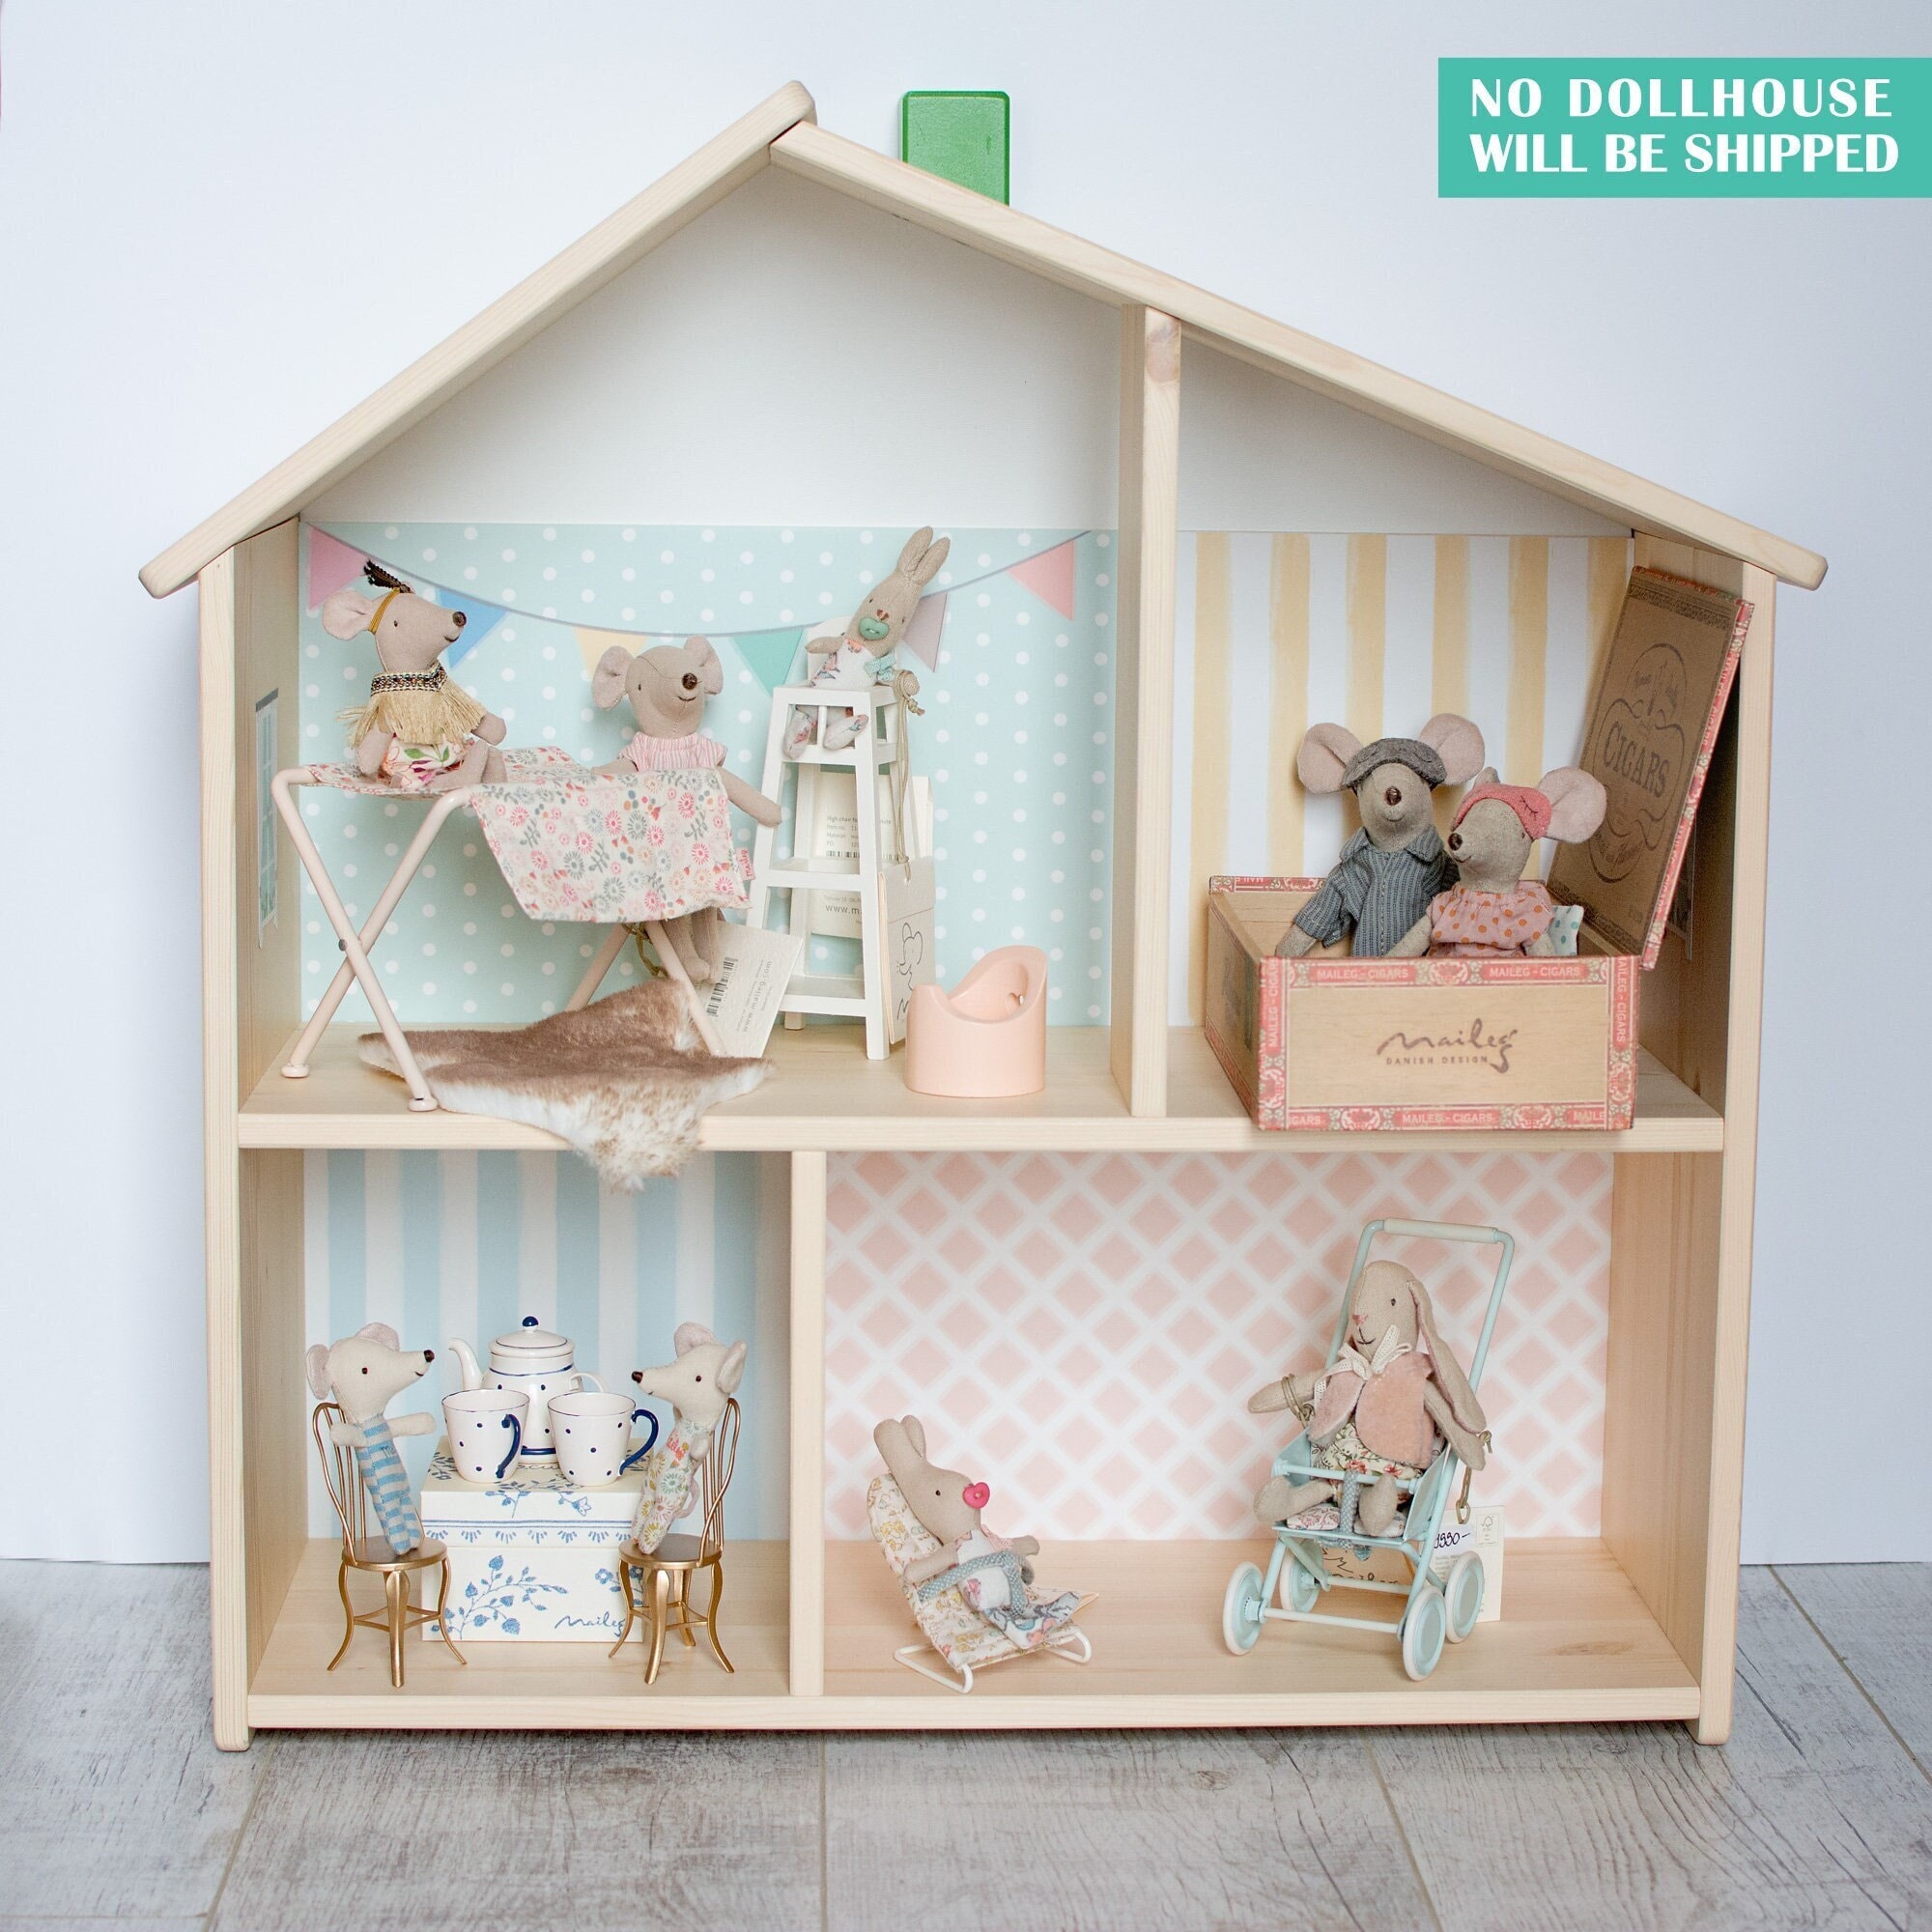 Maileg House maison de poupée - jouets miniatures en stock